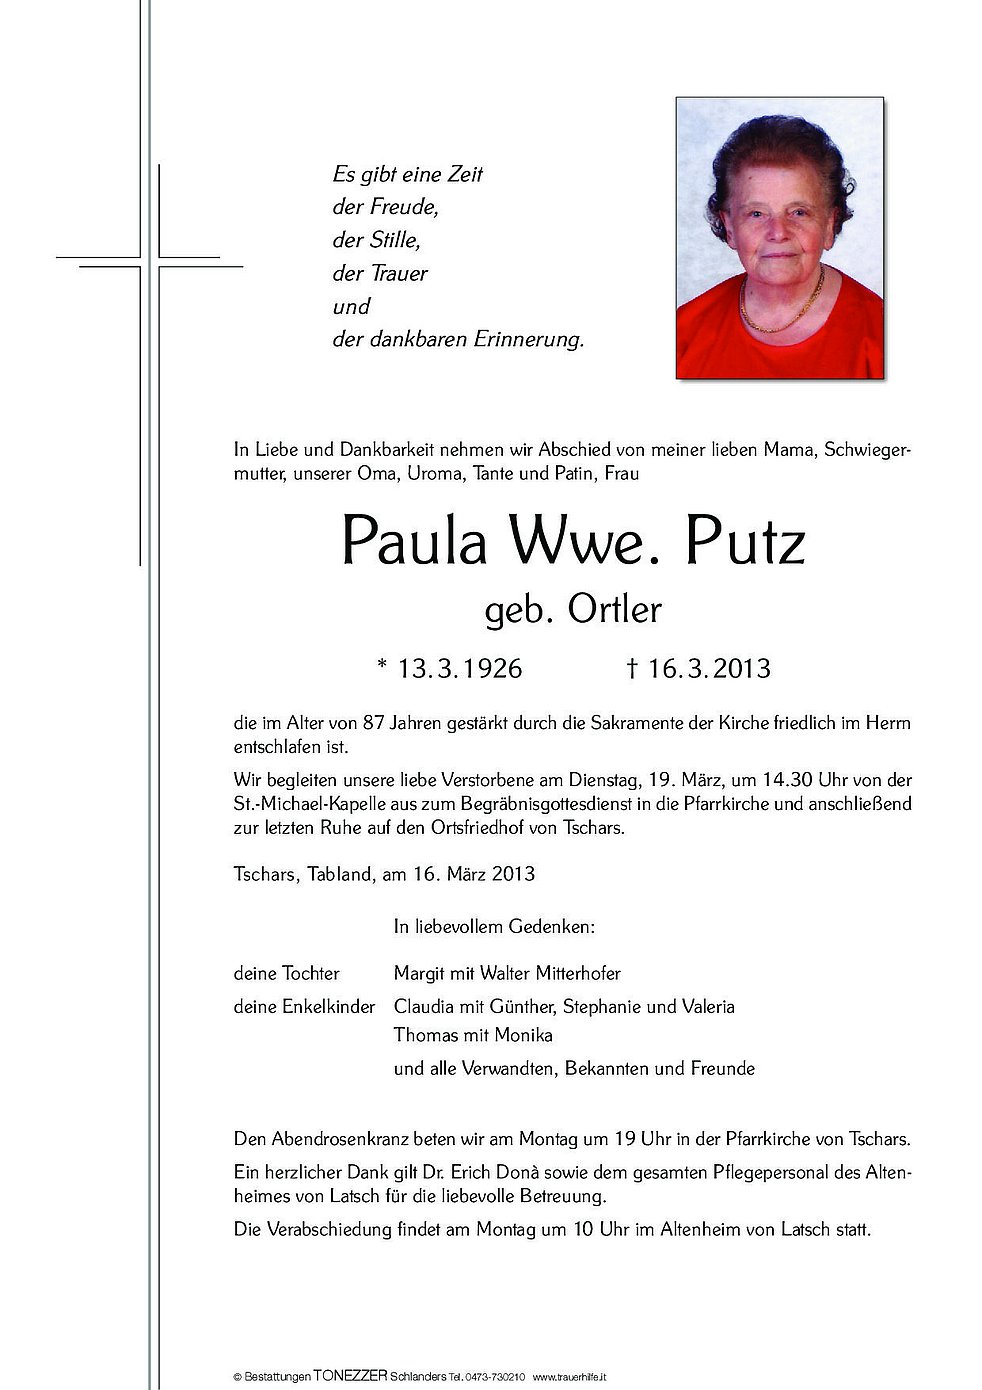 Paula Wwe Putz Aus Kastelbell Tschars Trauerhilfeit Das Südtiroler Gedenkportal 